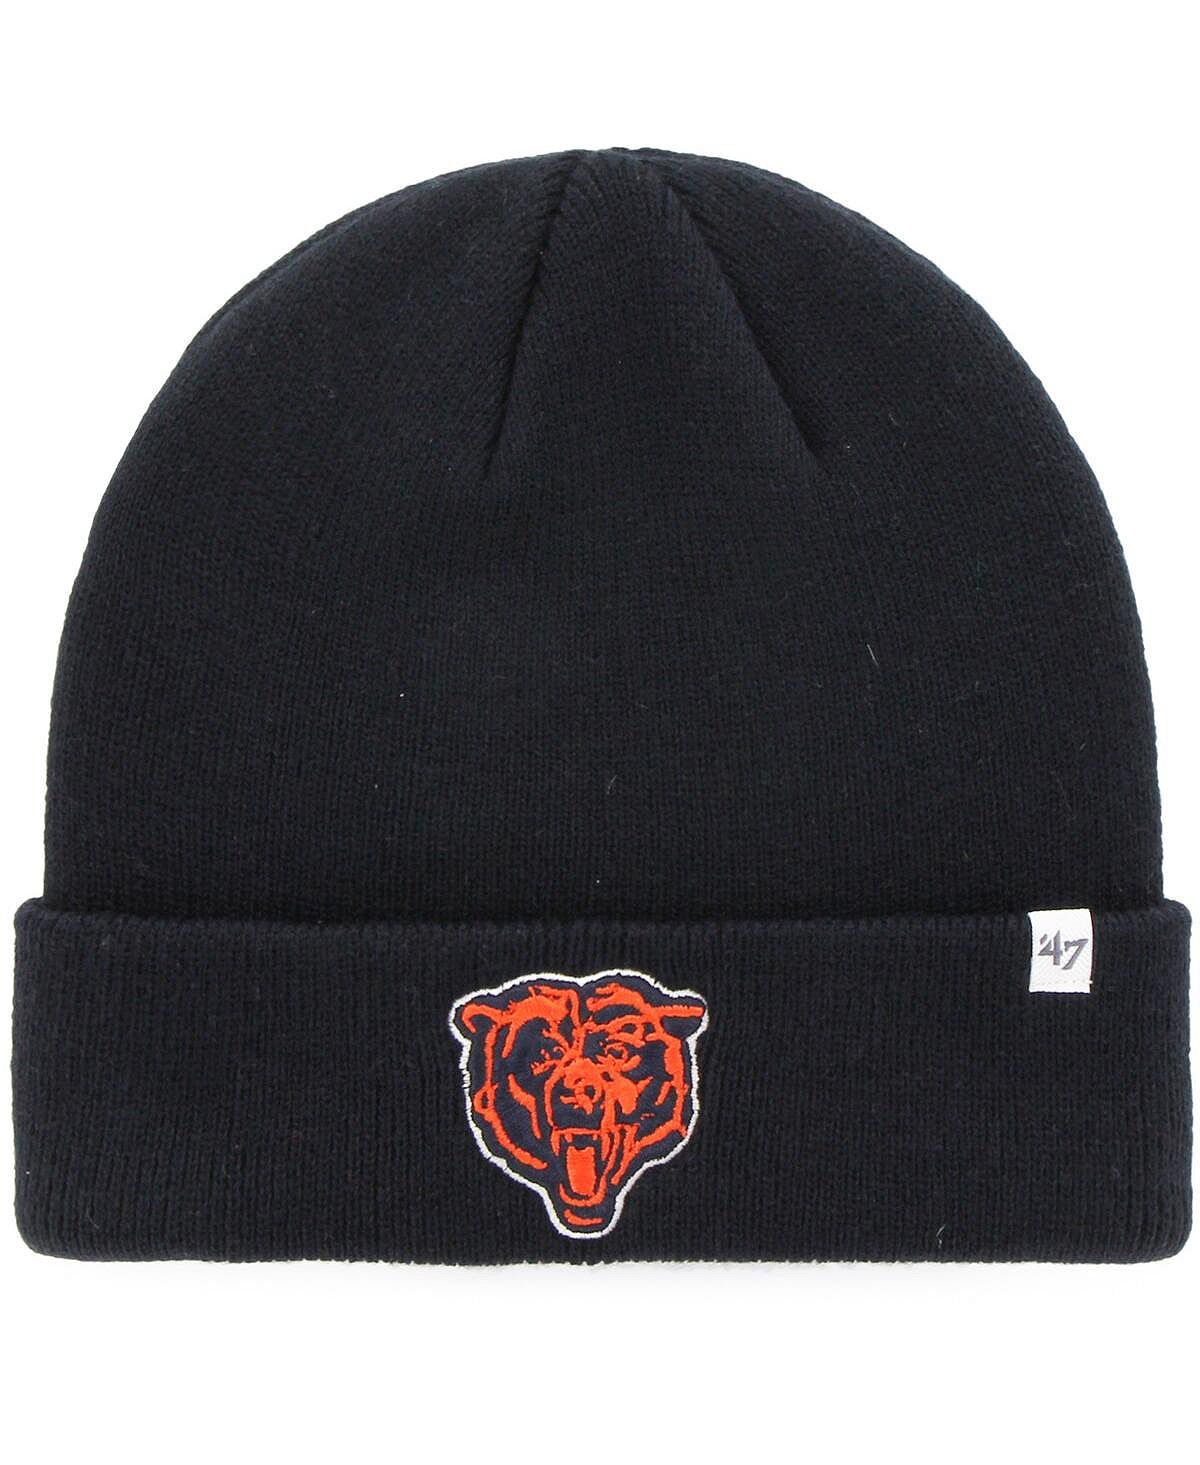 Мужская темно-синяя вязаная шапка с манжетами Chicago Bears Legacy '47 Brand мужская серая вязаная шапка chicago bears highline с манжетами 47 brand